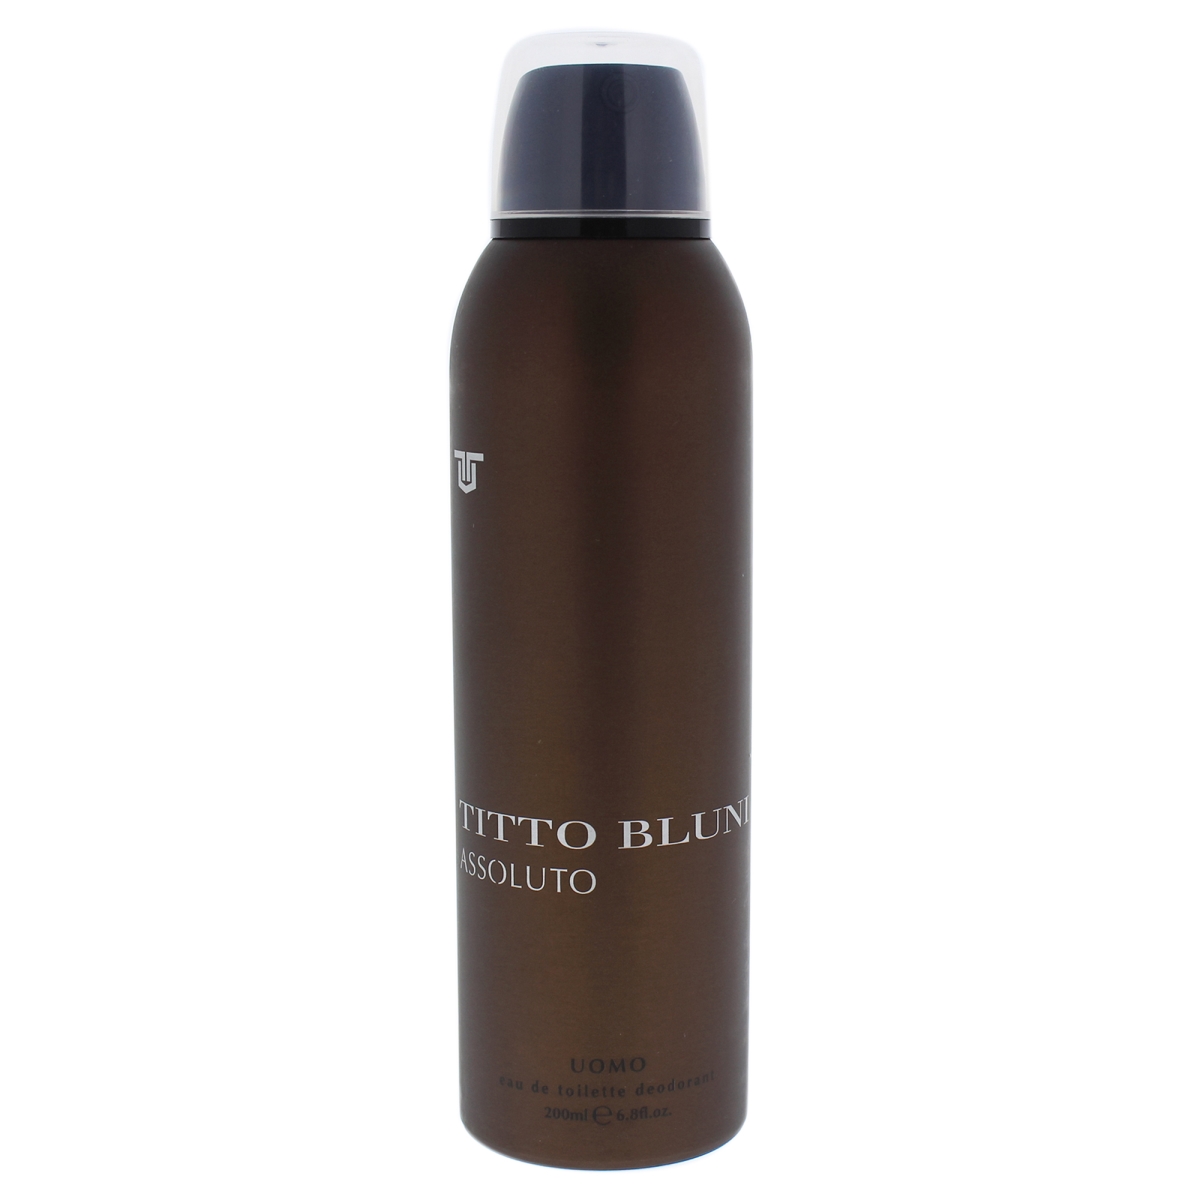 Picture of Titto Bluni I0085738 6.8 oz Assoluto Uomo Deodorant Spray for Men